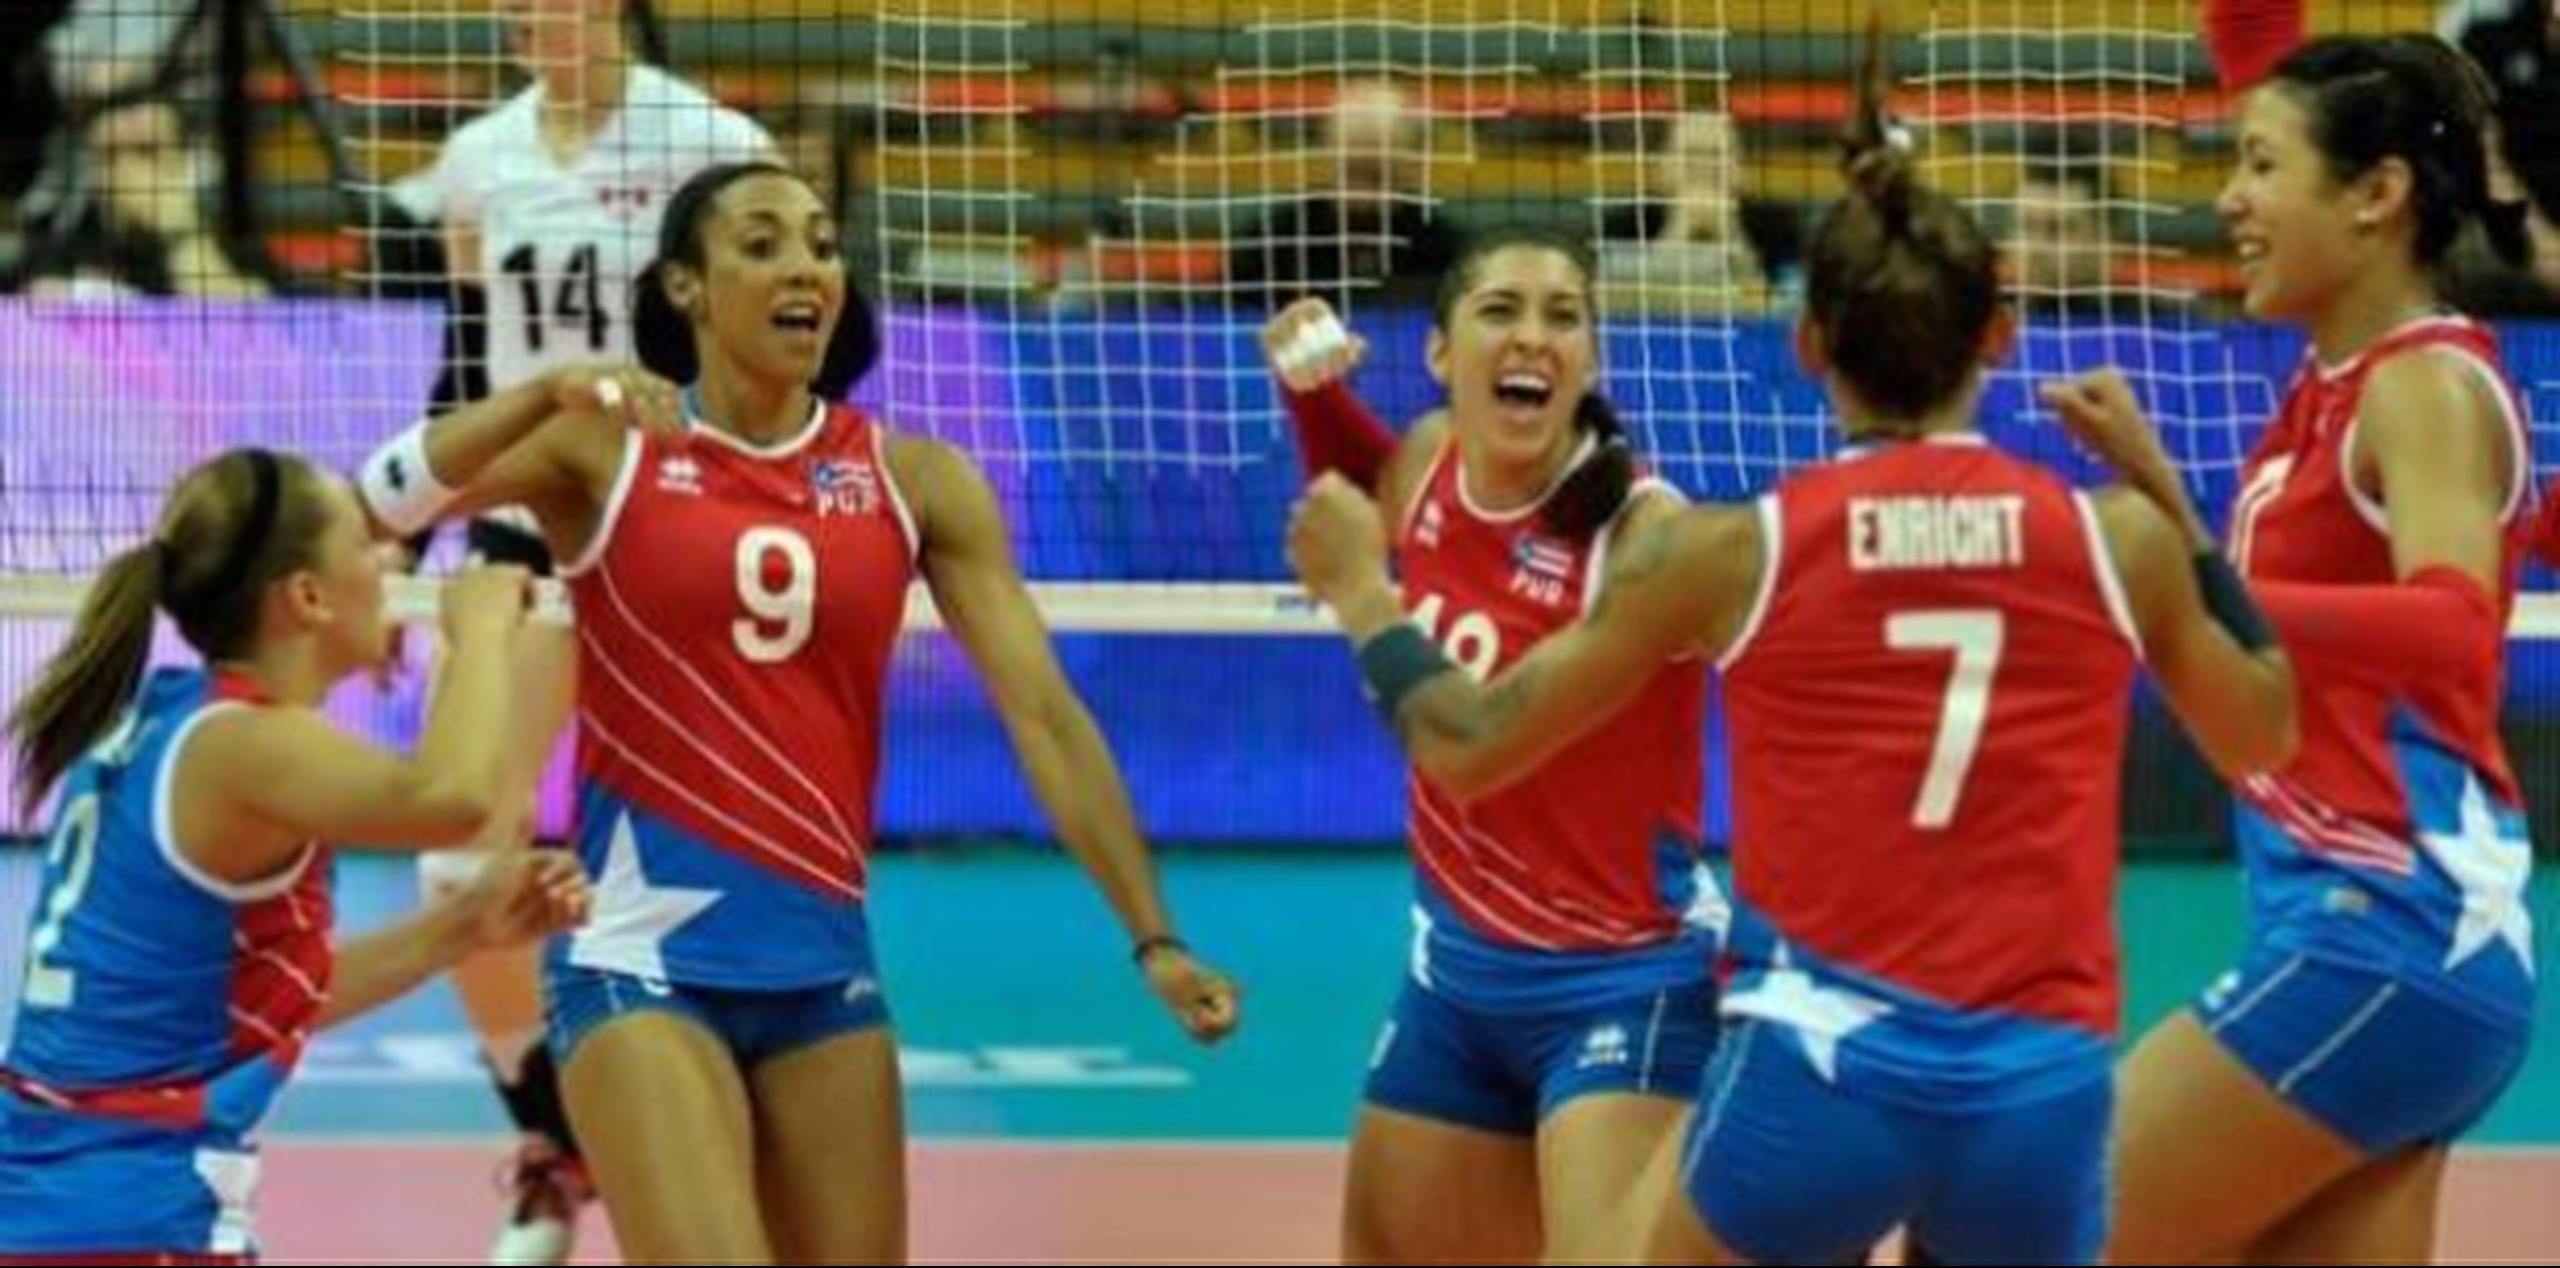 Con la victoria sobre Estados Unidos, el equipo de Puerto Rico firmó su mejor actuación en la historia del torneo. (Archivo)